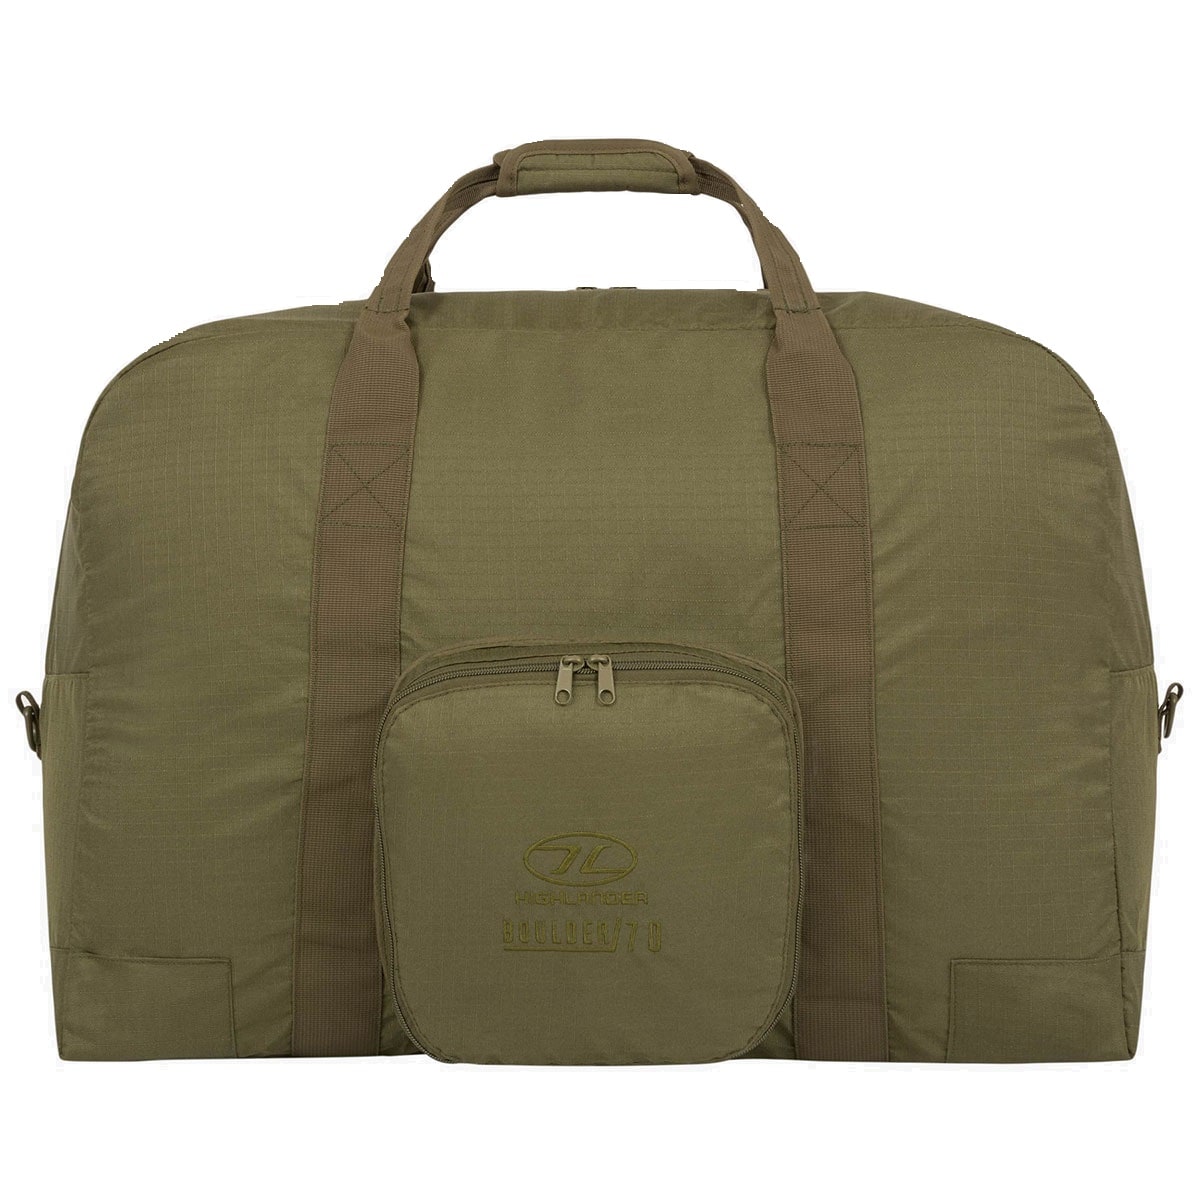 Torba Highlander Outdoor Boulder Duffle Bag 40 l - Olive